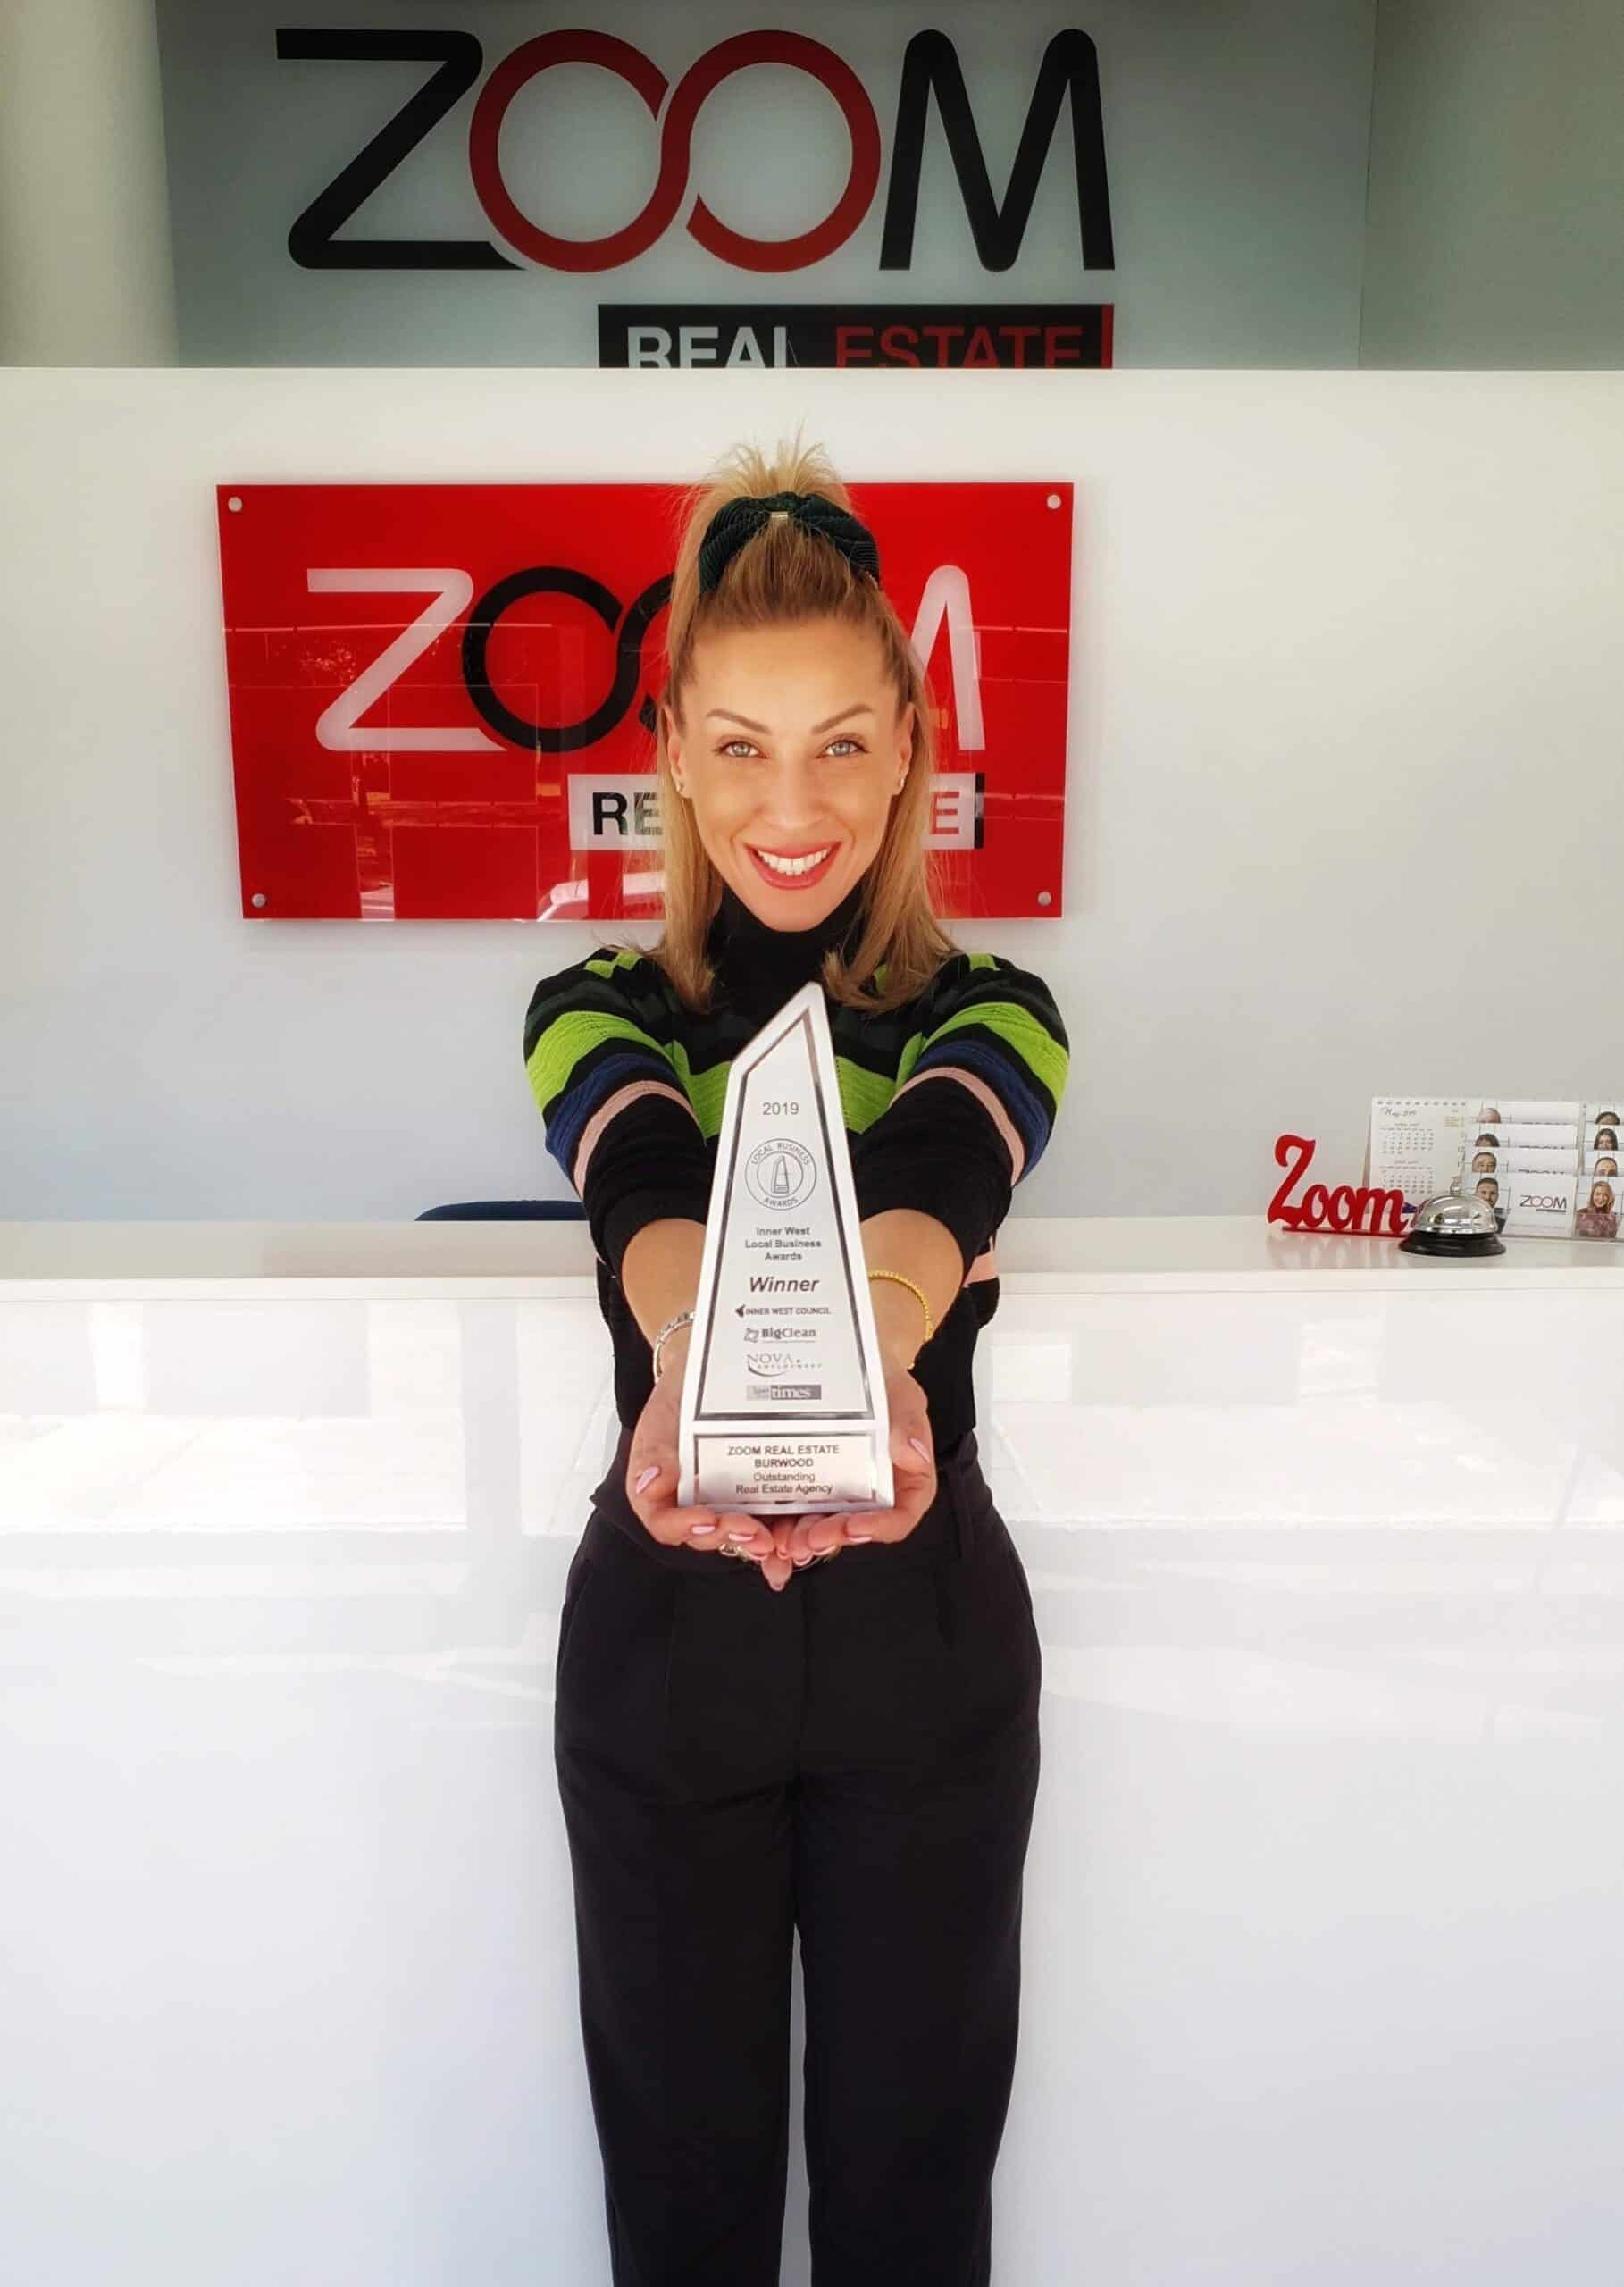 Strong Greek Women Inspiring Women: Award-Winning Zoom Real Estate's Ana Mavridis 5